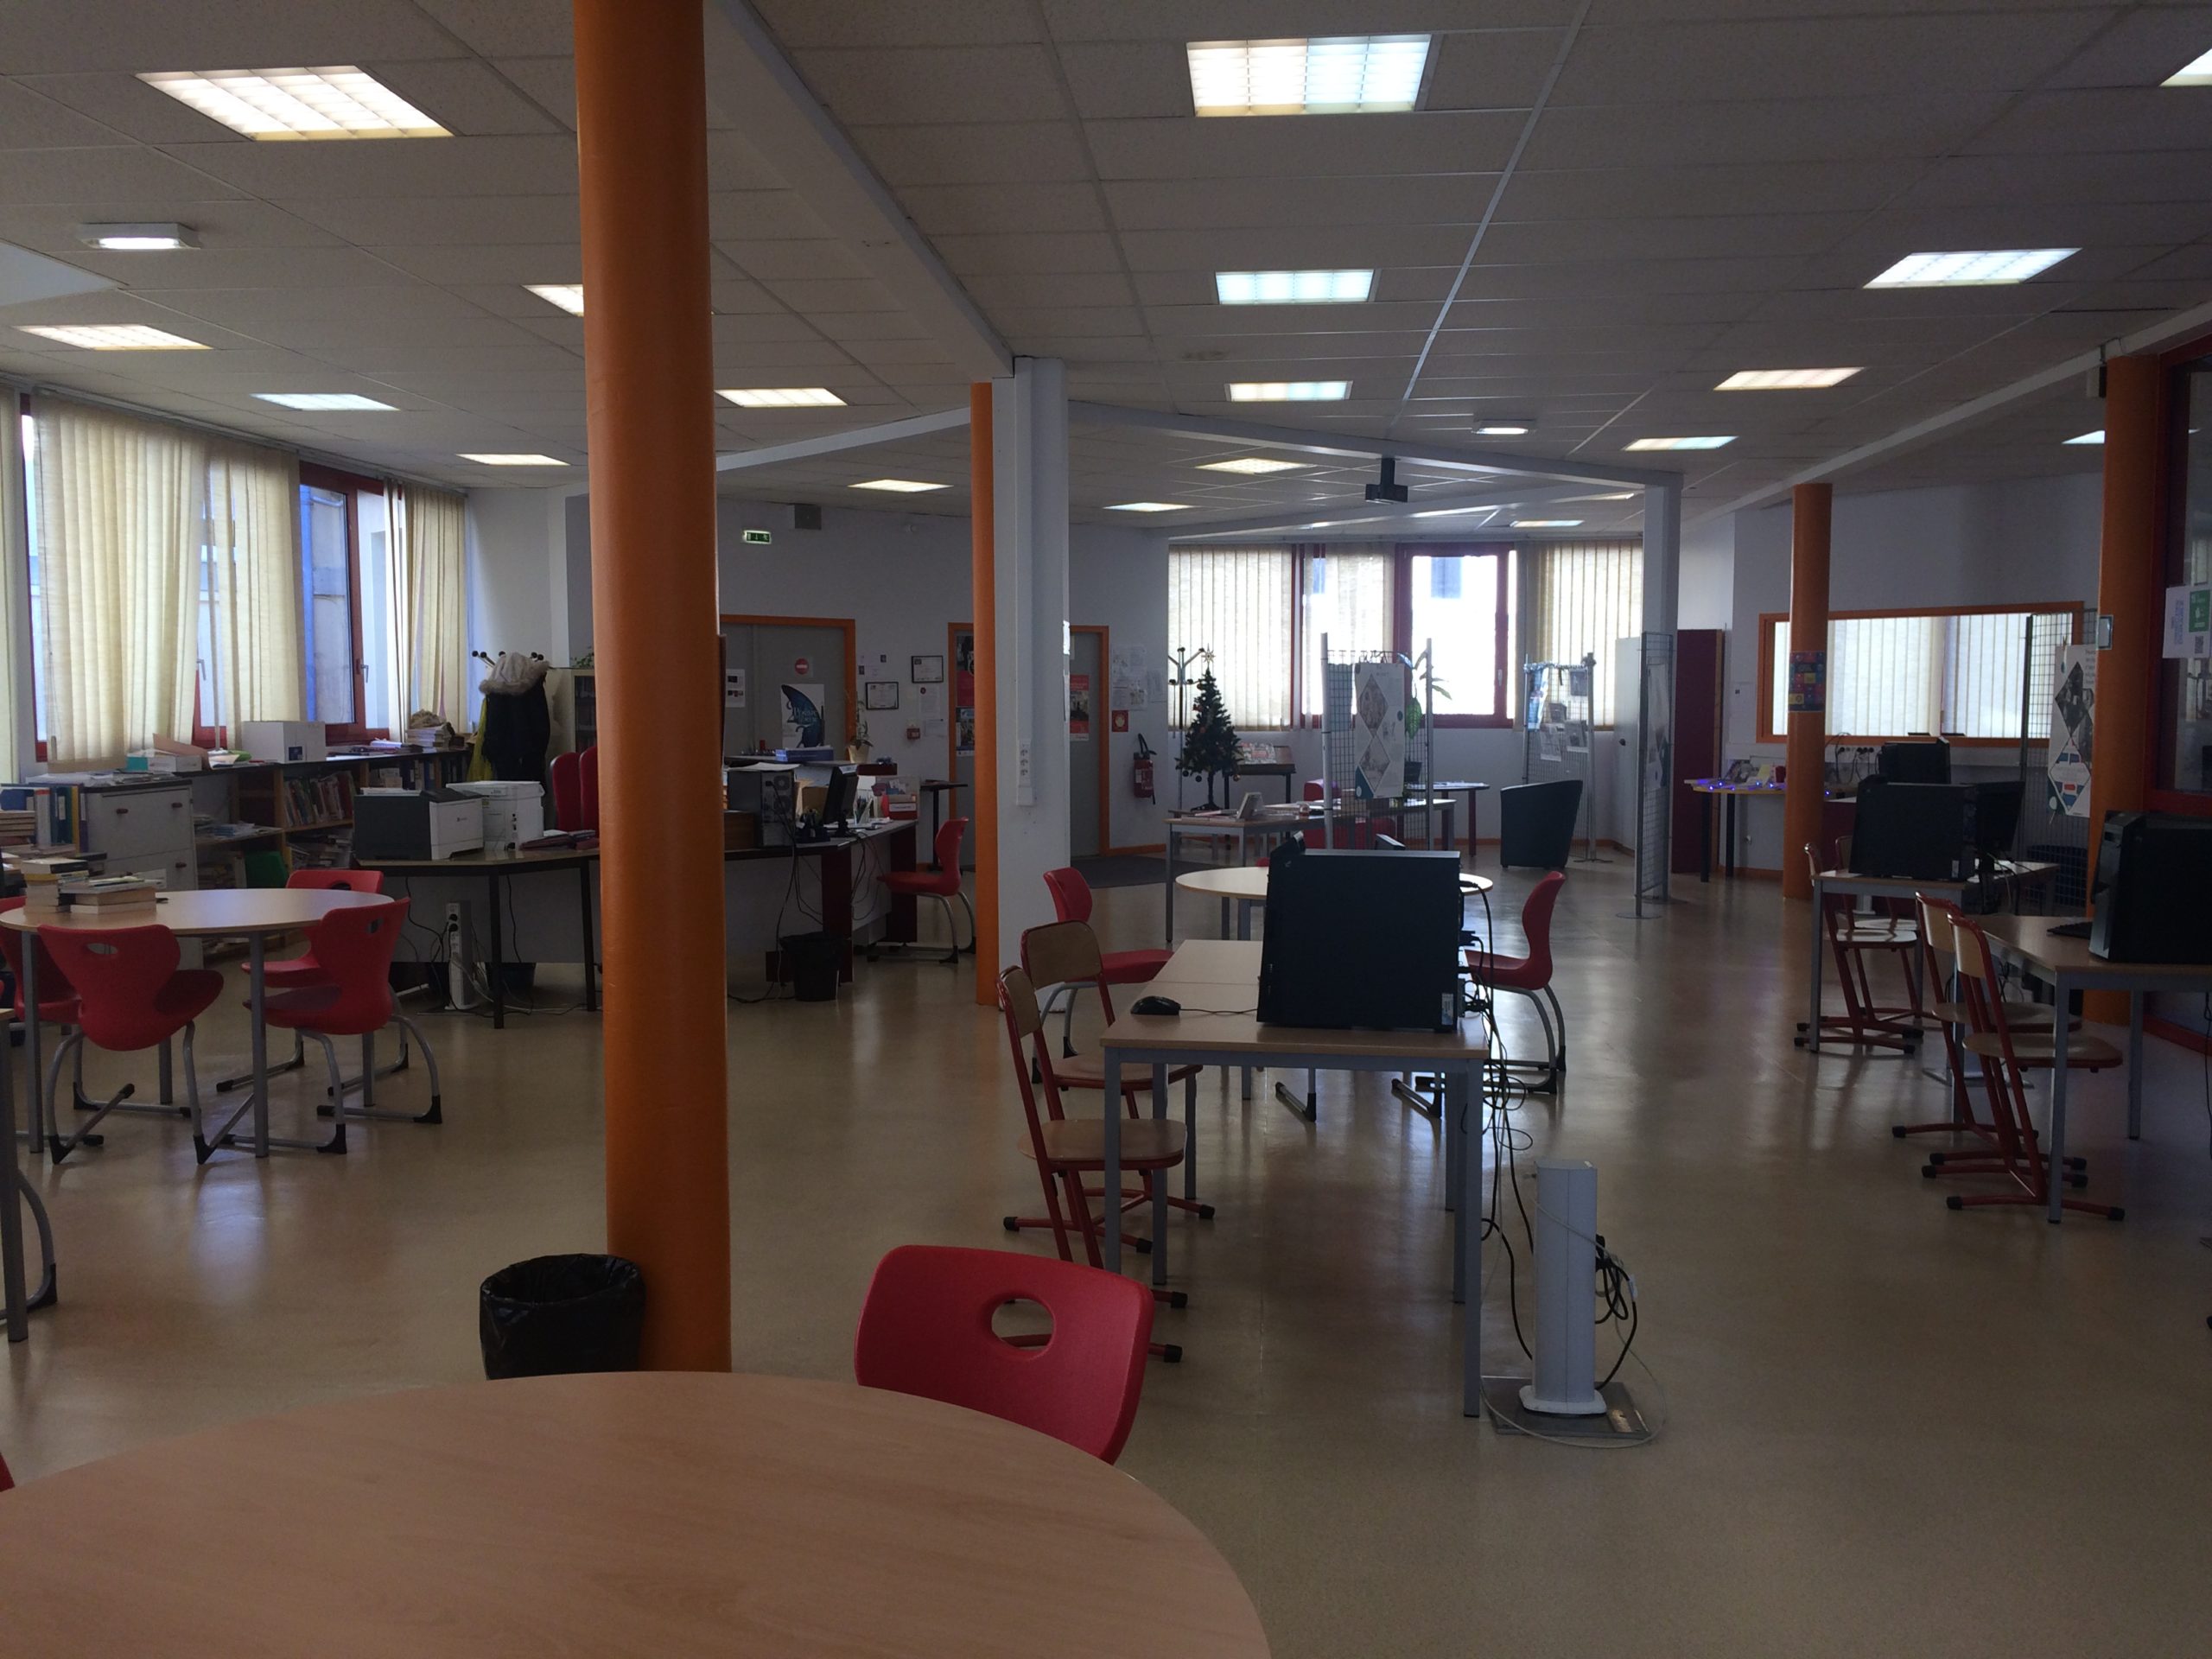 Les lycéens du lycée Condorcet, à Belfort, participent à une résidence de journalistes pendant cette période de confinement.